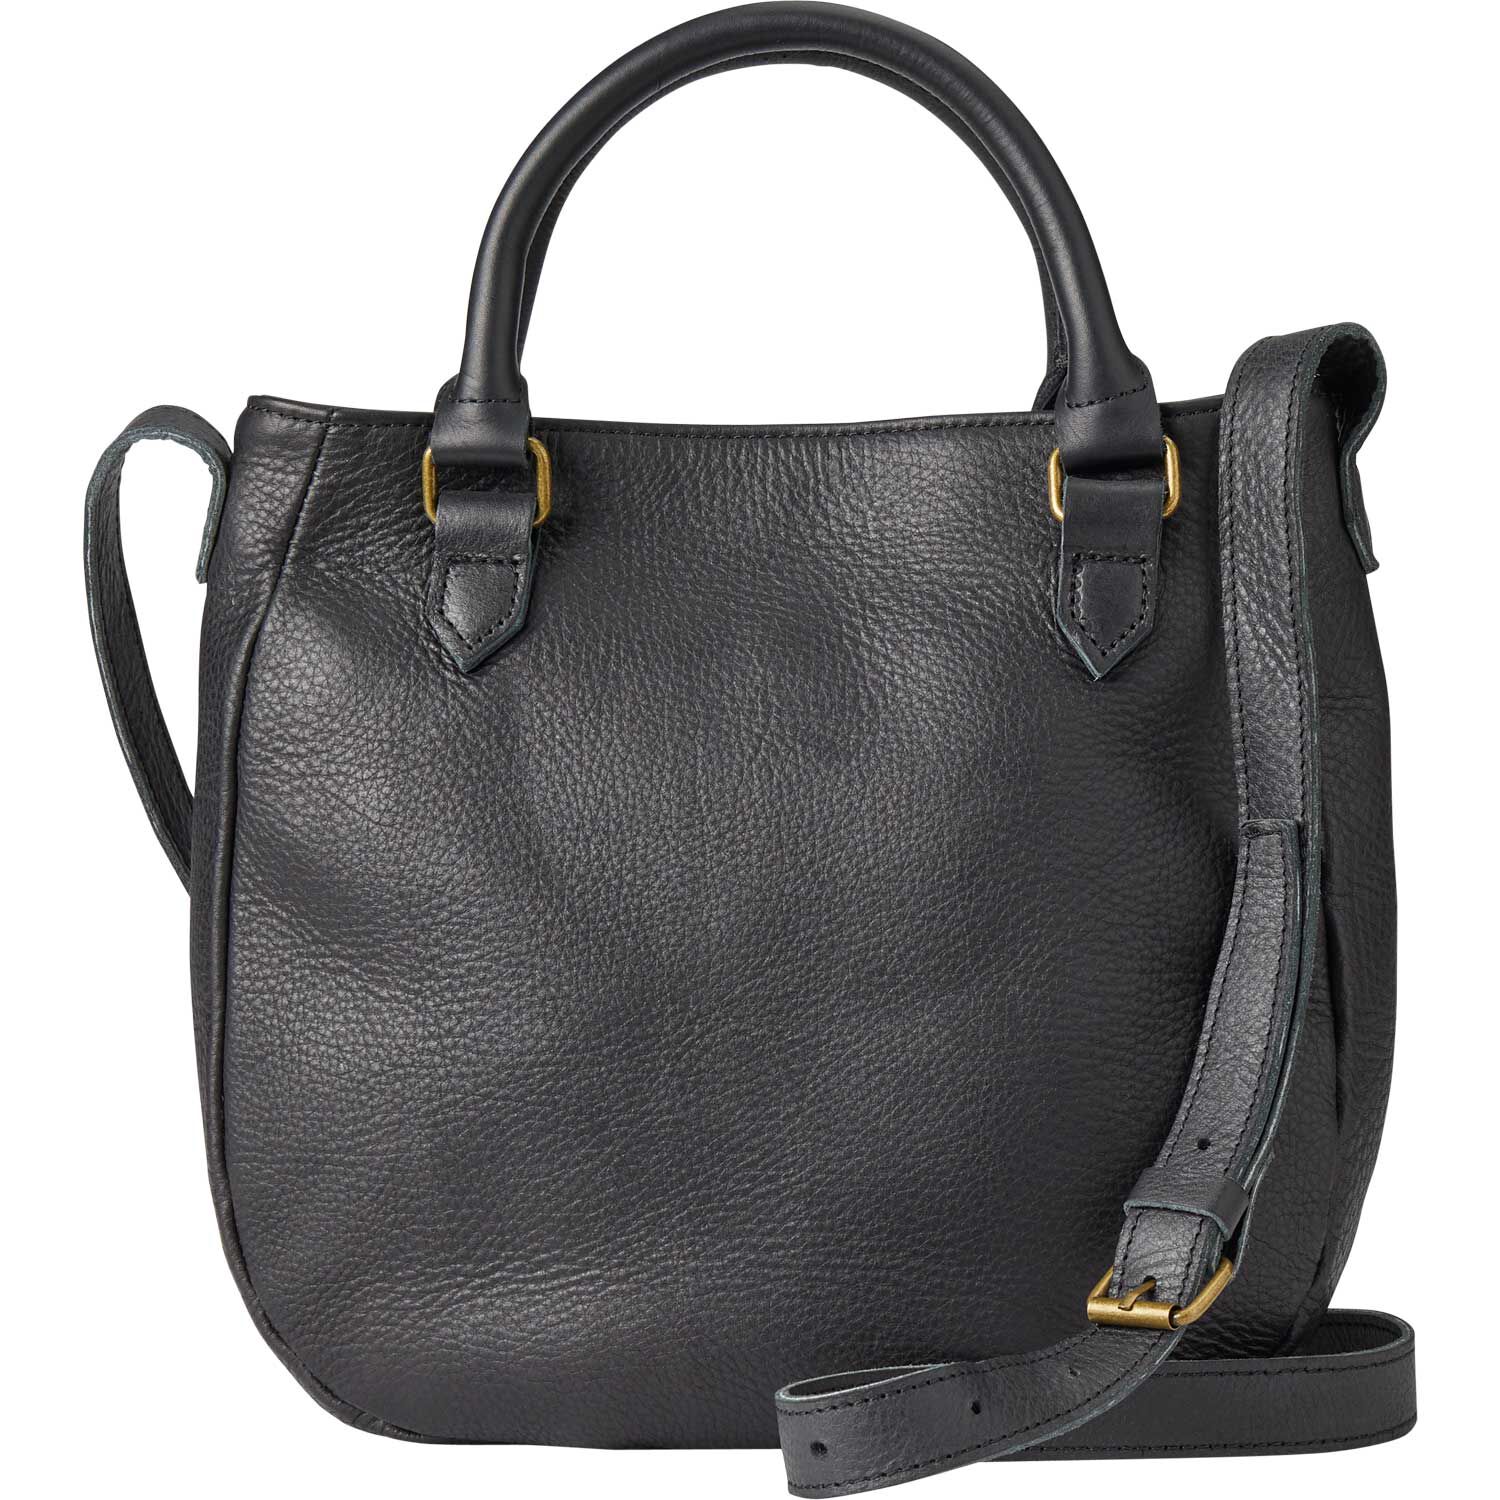 Vintage Womens Black Leather Small Saddle Handbag Shoulder Bag Purse f